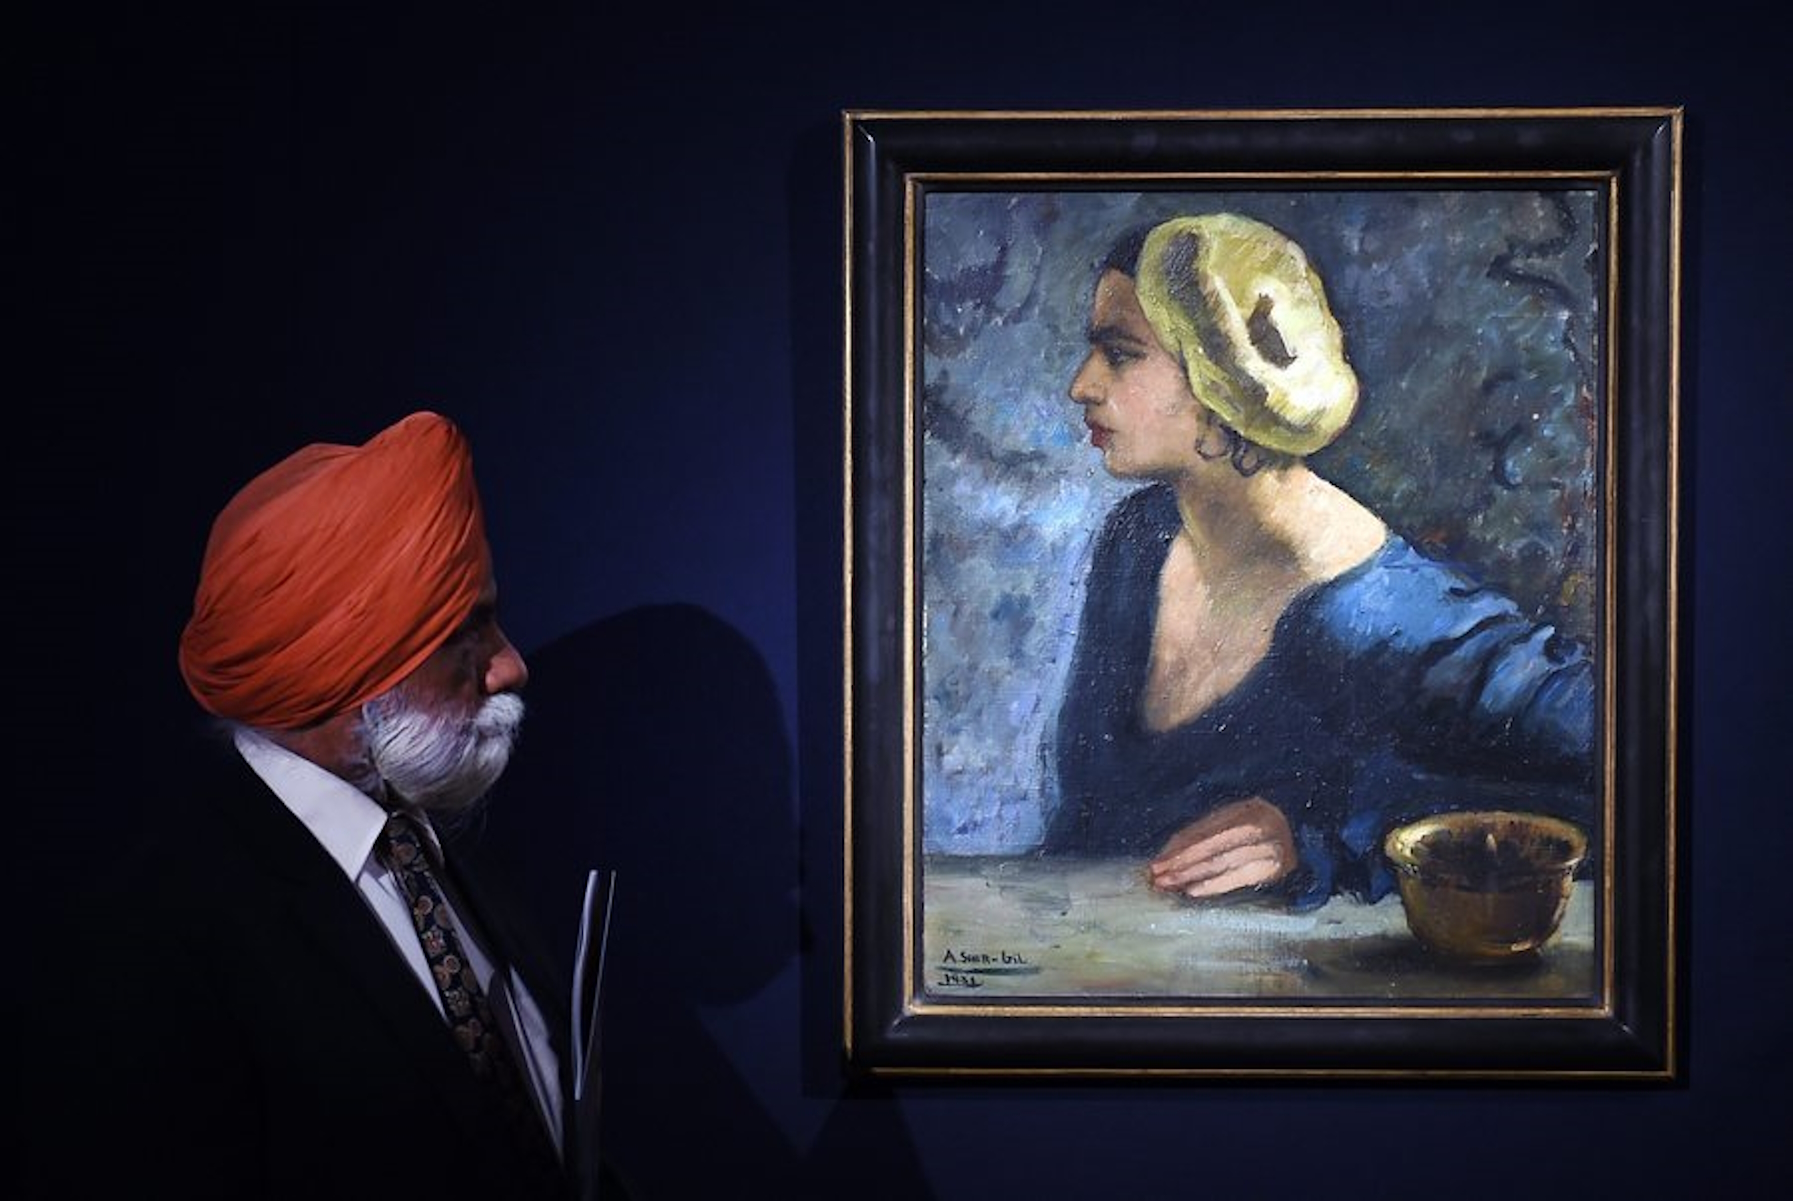 Ινδία: Σε τιμή ρεκόρ 7,44 εκατ. δολαρίων πουλήθηκε σε δημοπρασία έργο της ζωγράφου Amrita Sher Gil